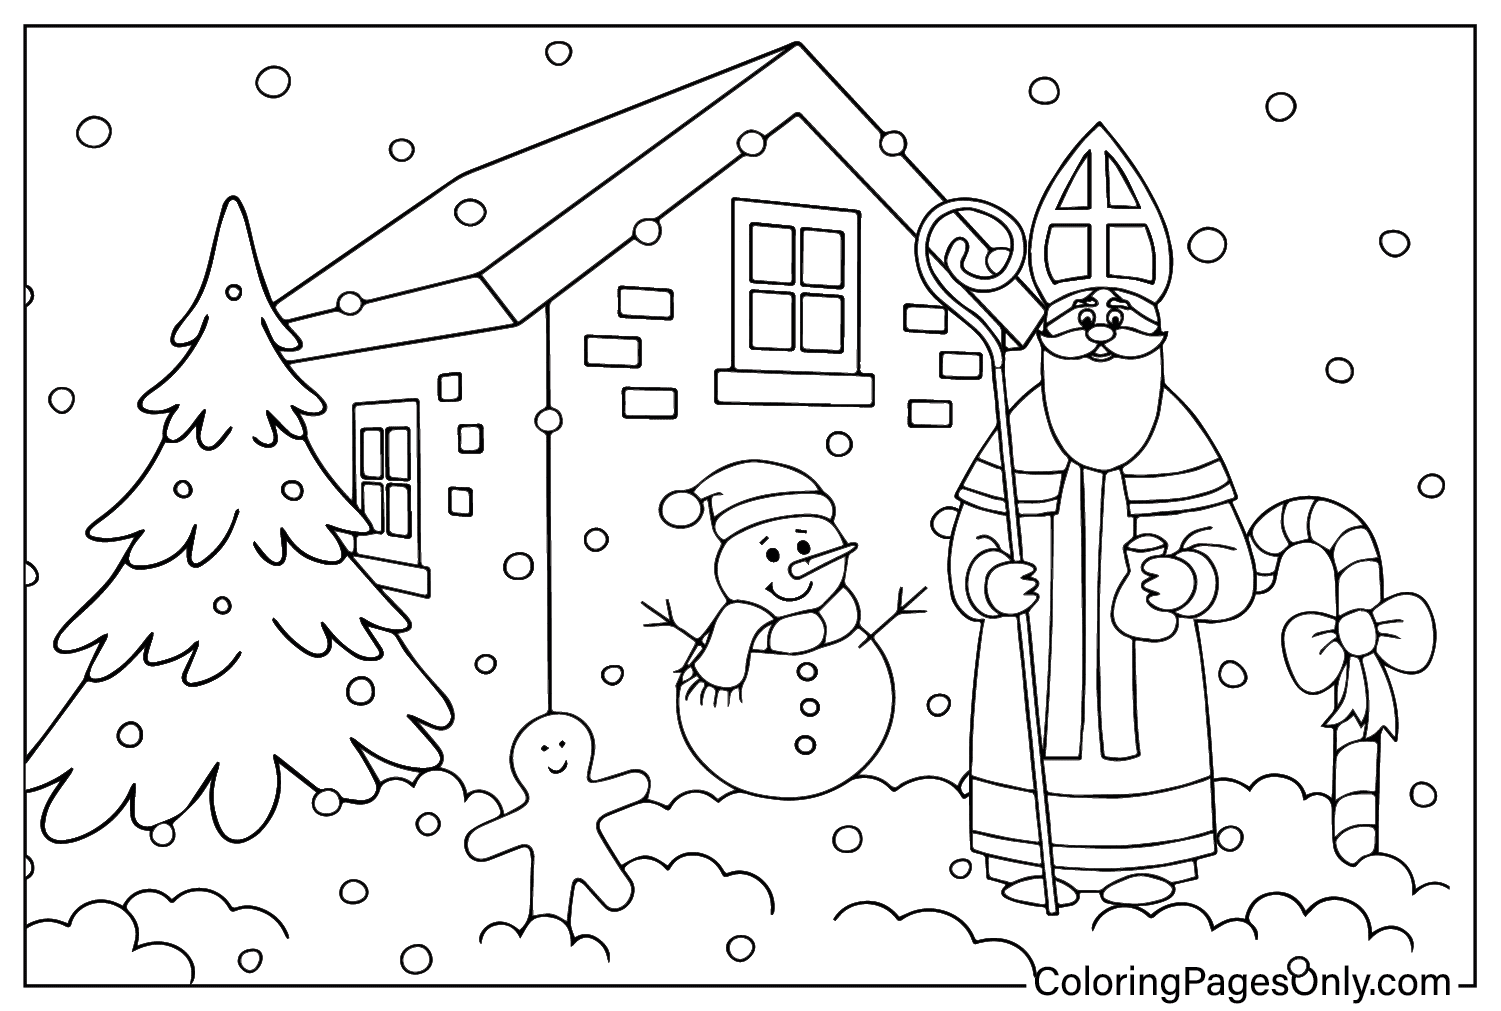 Página para colorir de São Nicolau e boneco de neve do Dia de São Nicolau